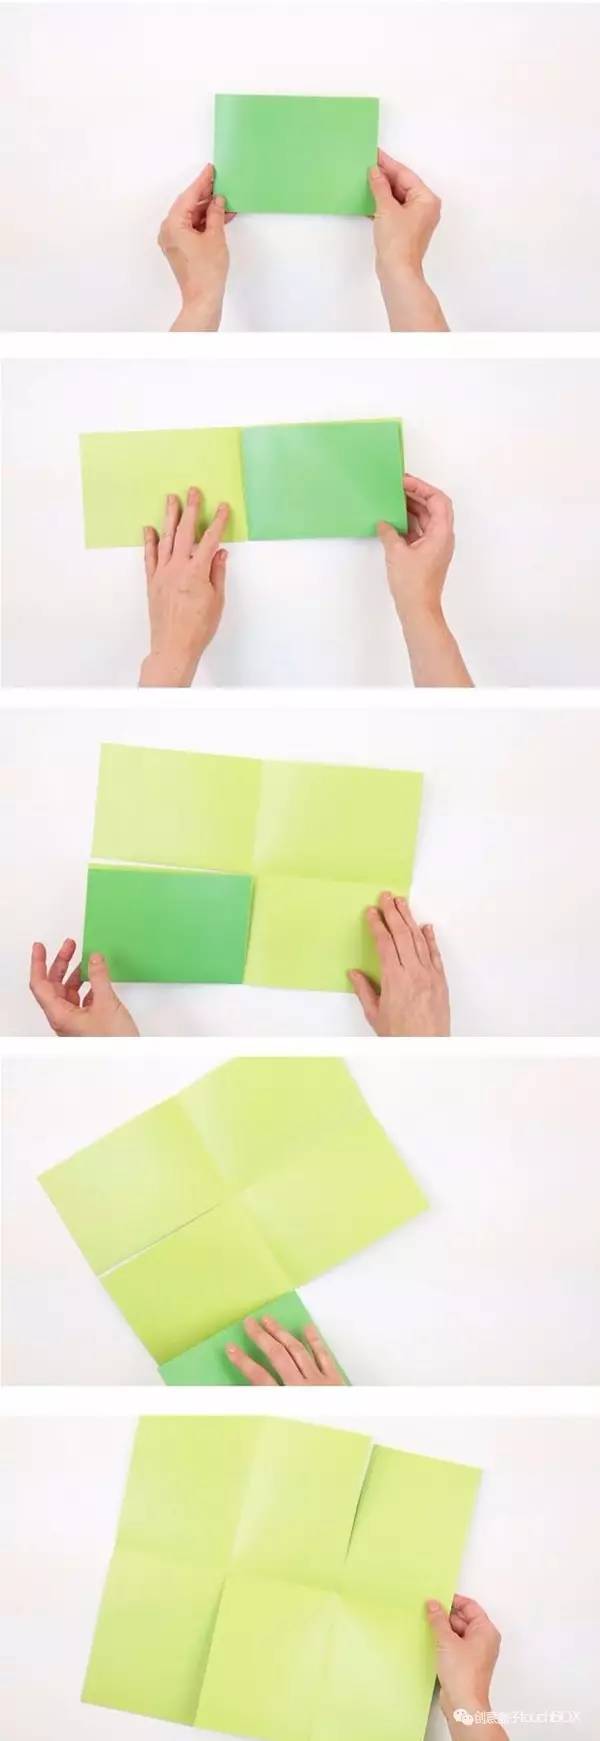 只要你有一张纸,就可以把它变成一本小书的方法:比如这样的六页书折